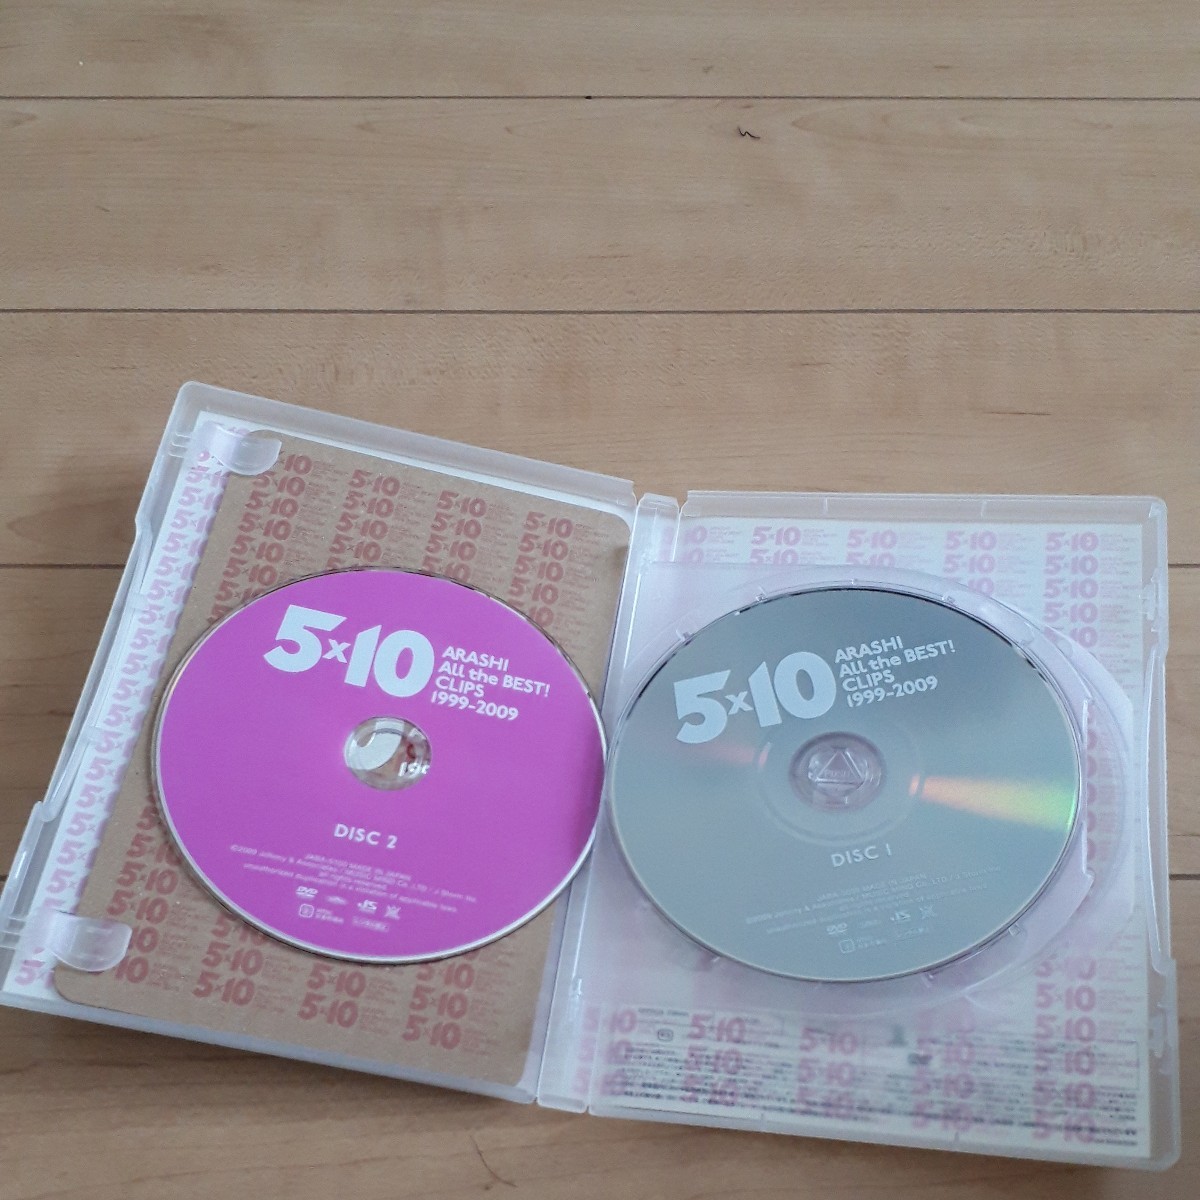 DVD2枚組 嵐 ARASHI 5×10 All the BEST! CLIPS 1999-2009 ベスト盤 クリップ集 A-RA-SHI 32曲 236分収録_画像3